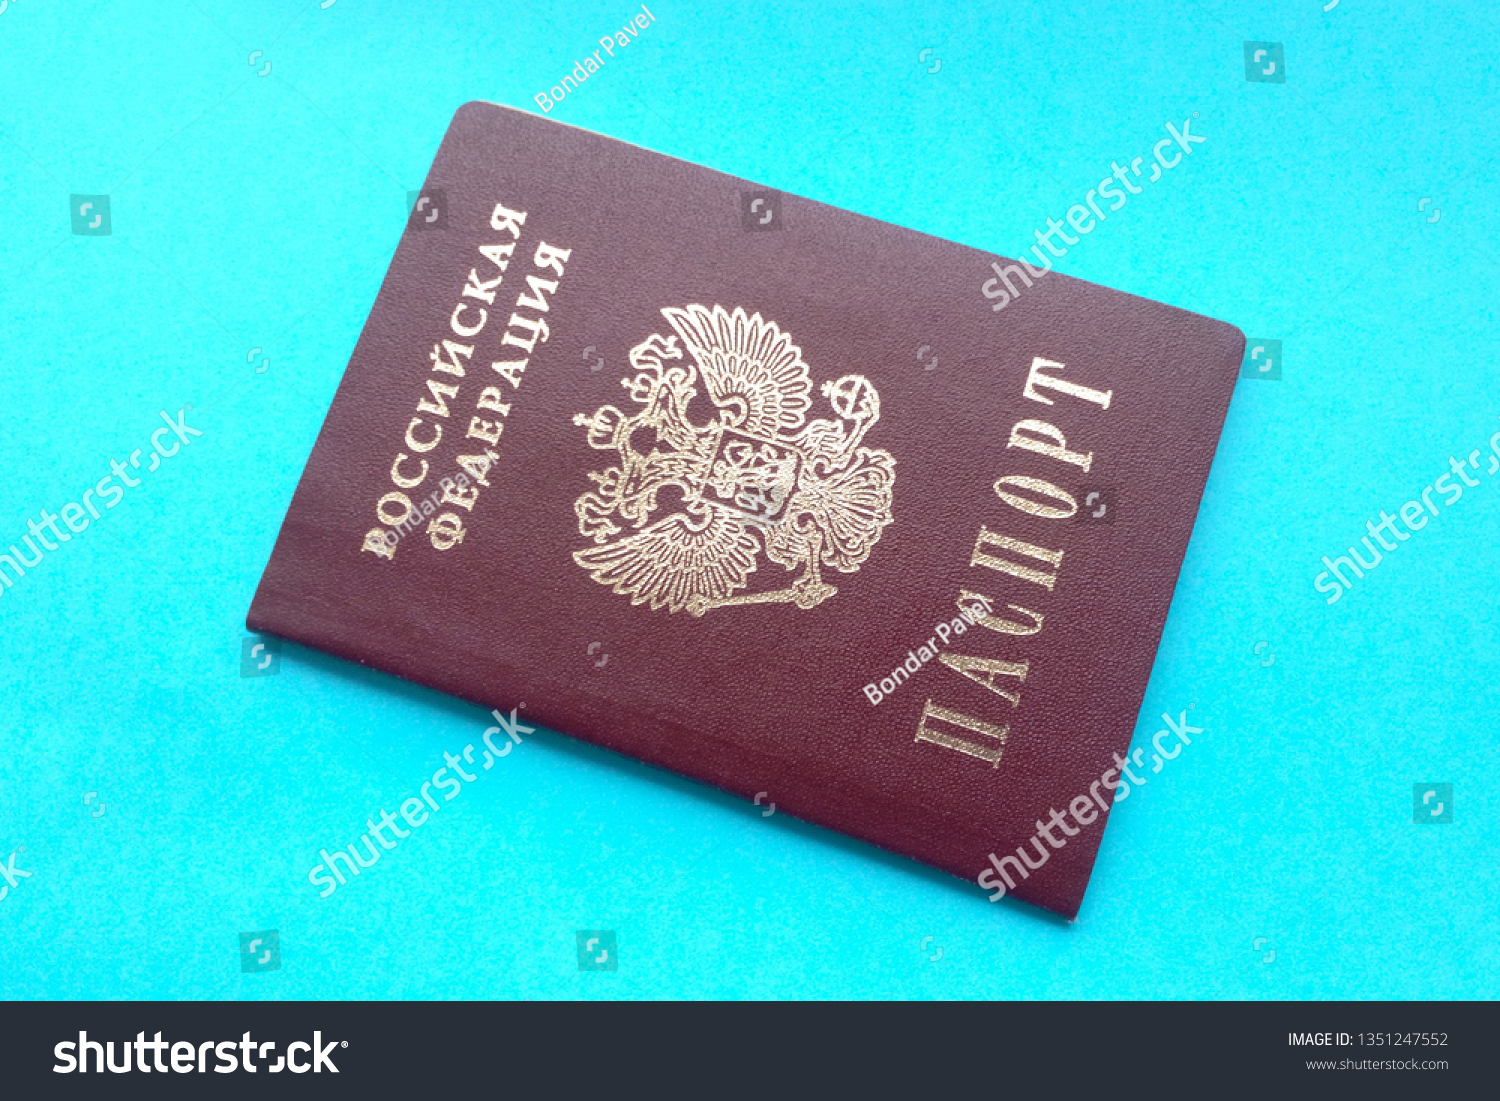 Blue background passport